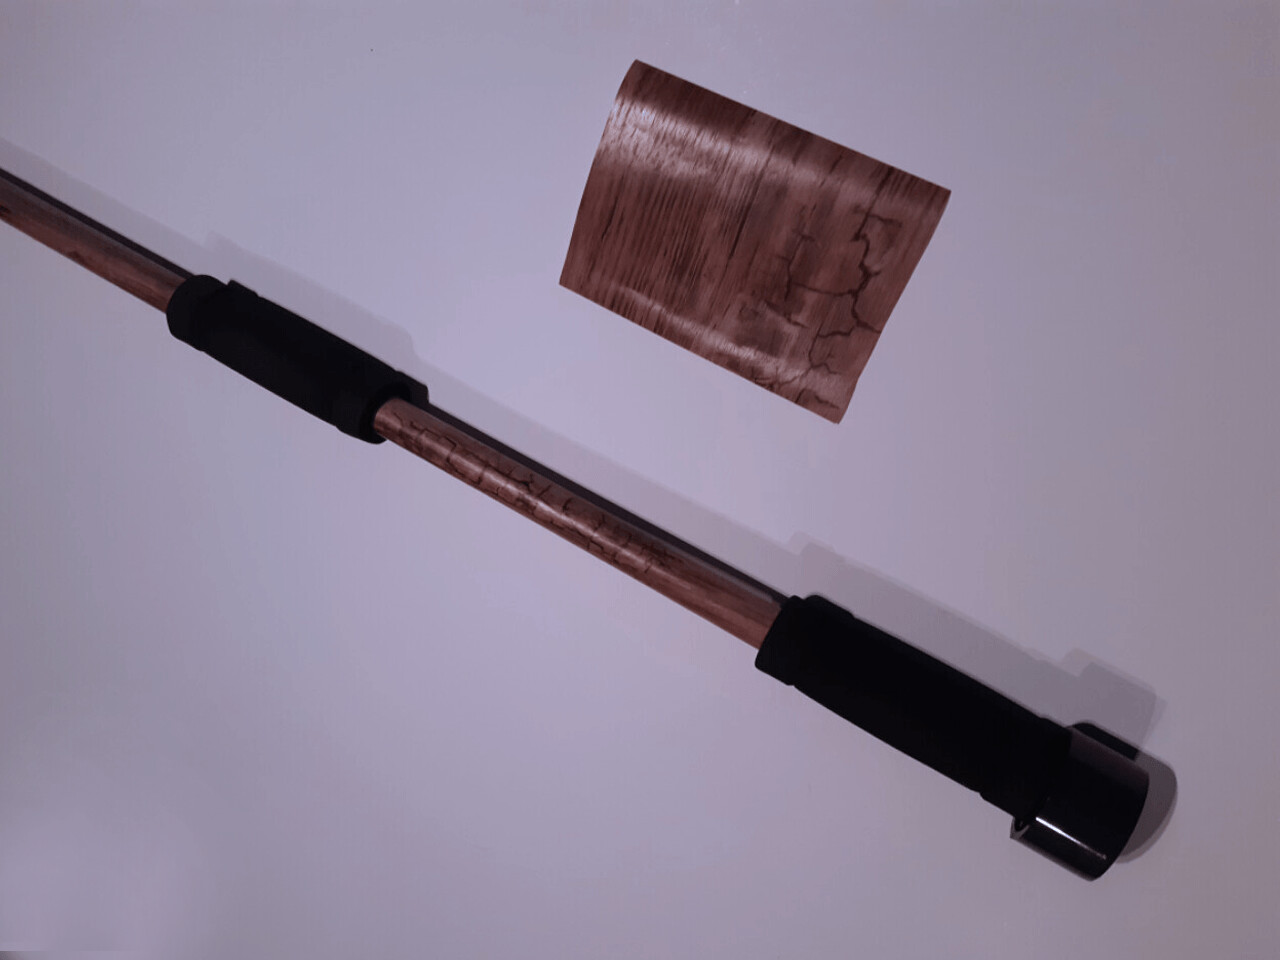 Blasrohr ca. 1,20 m mit 16 mm Innendurchmesser -
"Holz Designfolie"